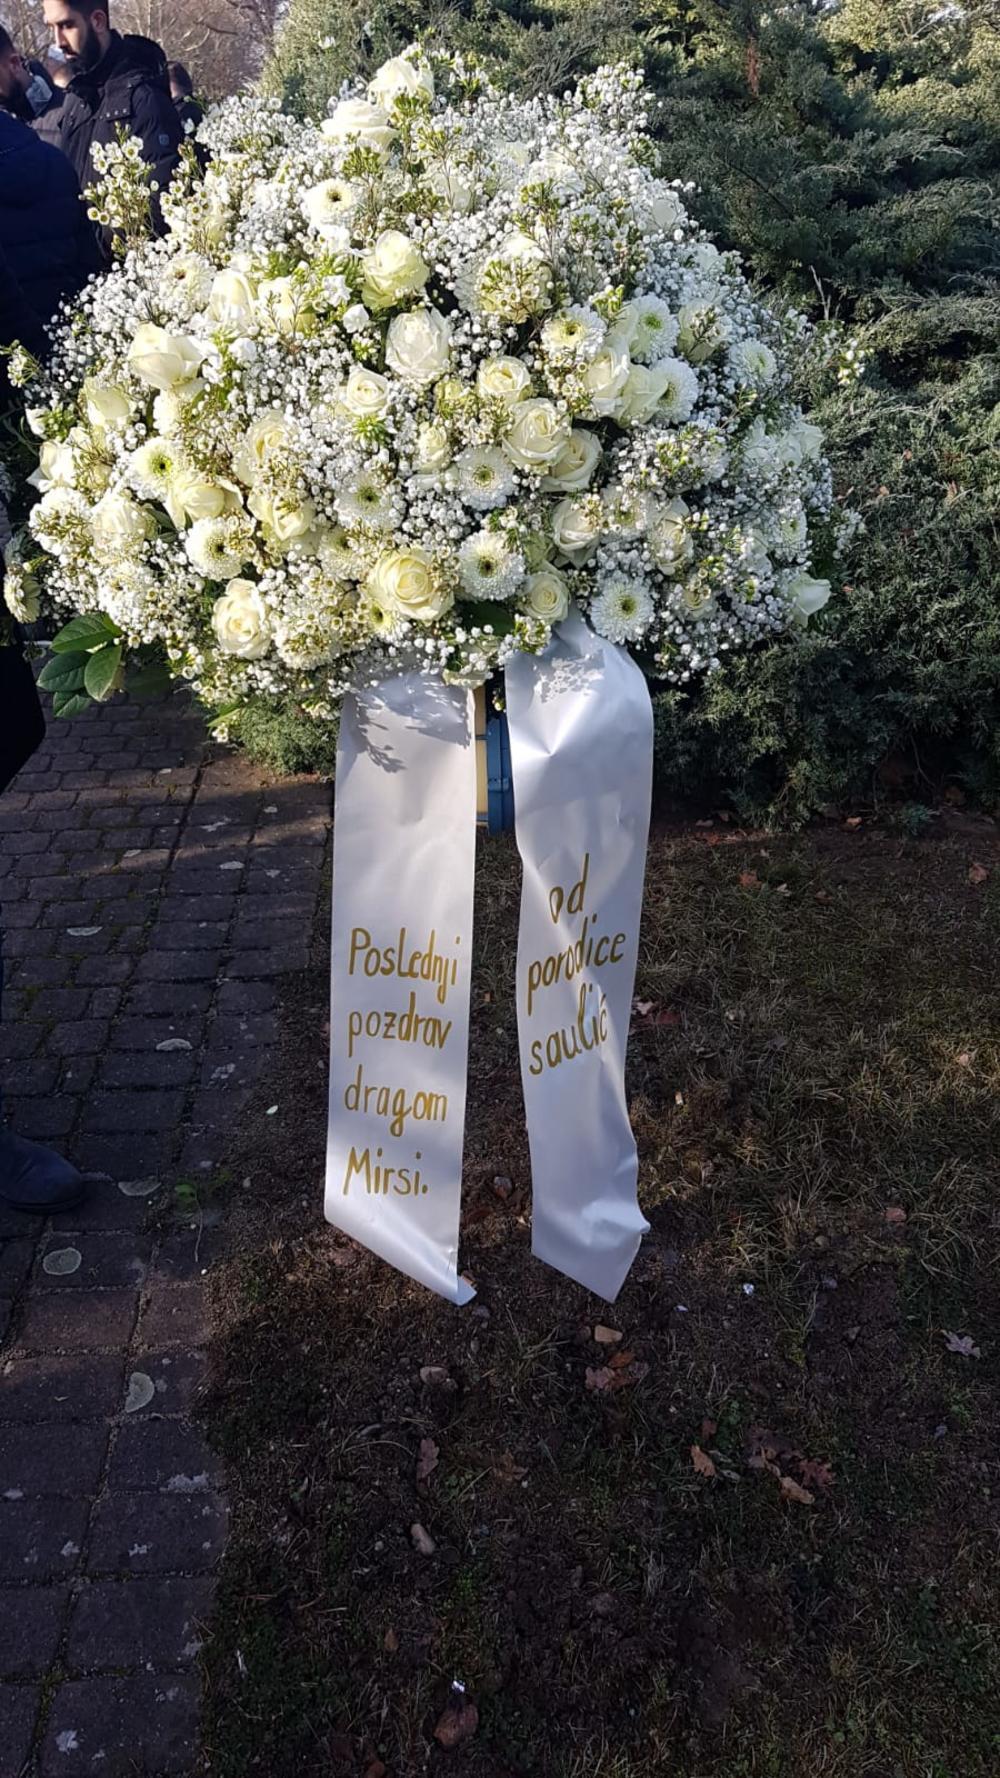 Porodica Šaulić poslala je bijeli vijenac sa porukom: "Posljednji pozdrav dragom Mirsi" - Avaz